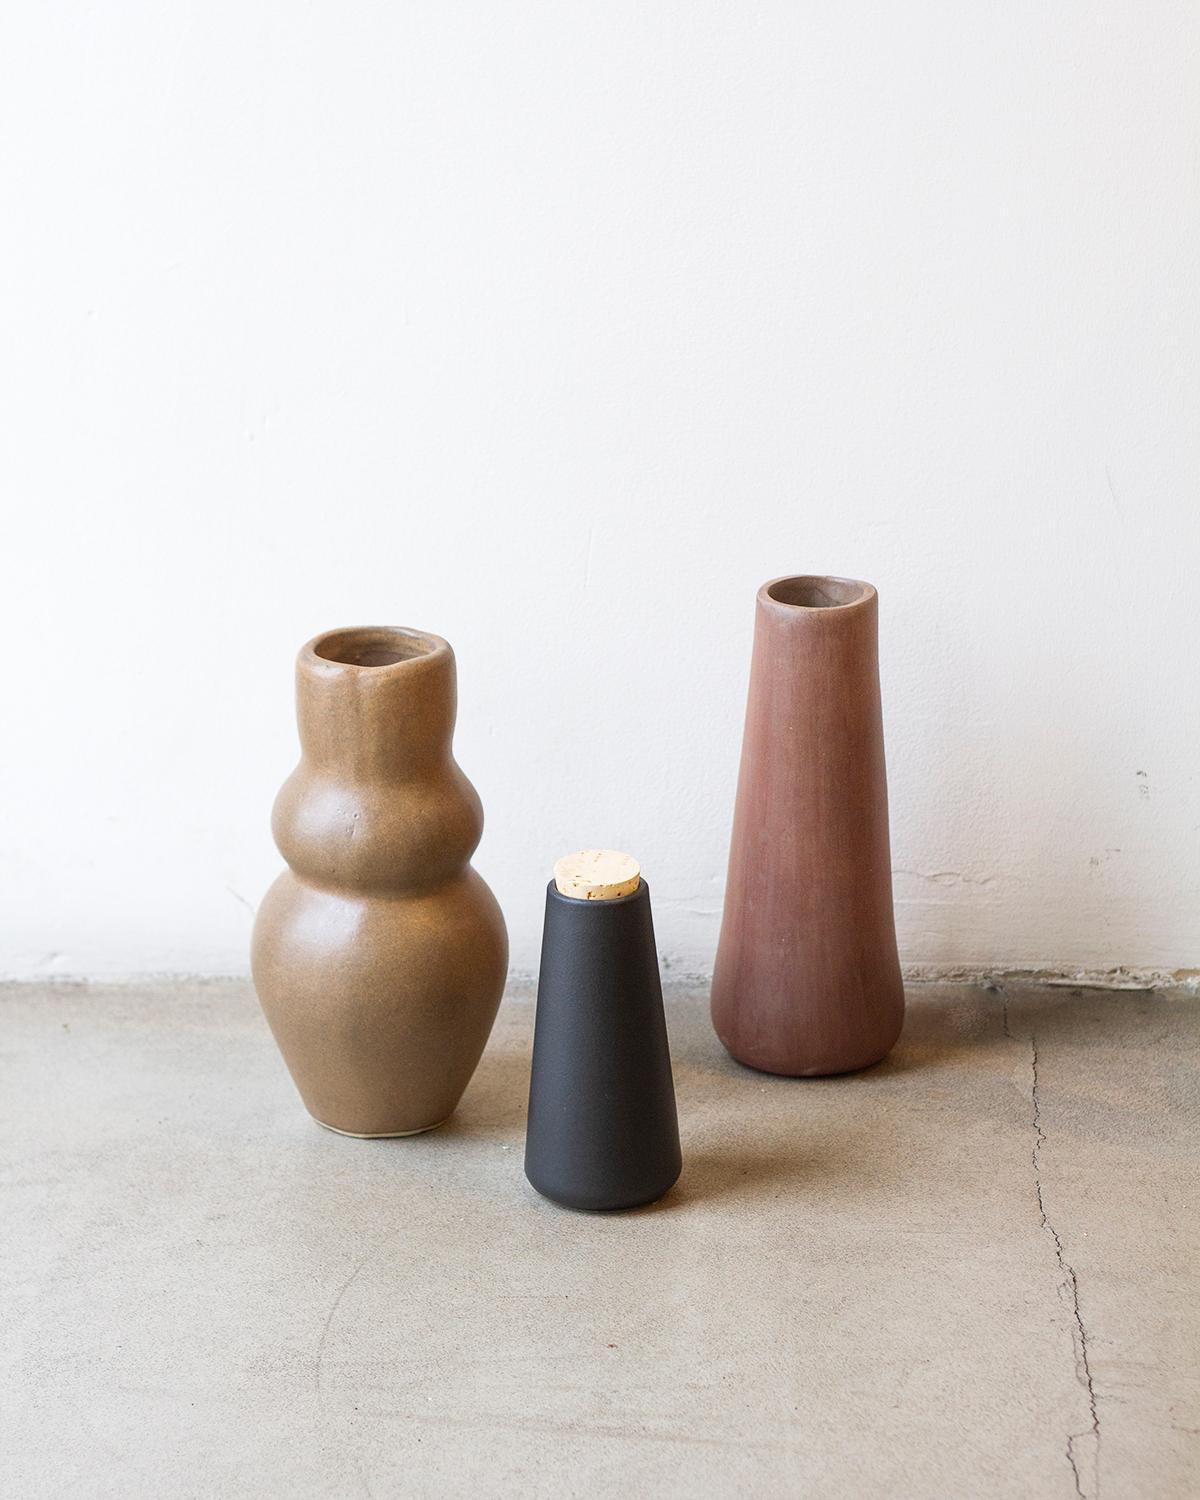 Diese handgefertigte Göttin-Vase aus Ton ist eine perfekte Ergänzung für jedes Heimdekor. Sie ist aus weißem Ton gefertigt und hat ein minimalistisches Design, das sie einzigartig und modern zugleich macht. Die zarte Textur eignet sich perfekt zum